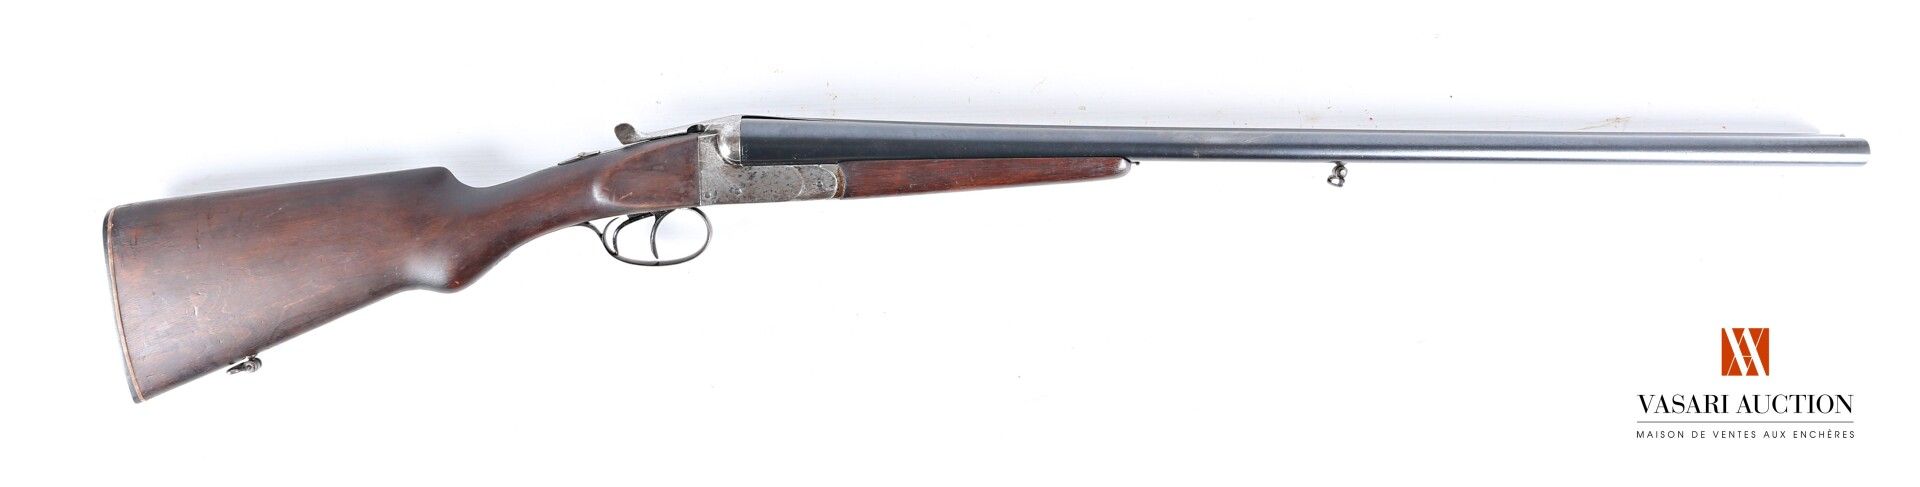 Null 圣艾蒂安螺旋桨口径16-70的无锤霰弹枪，69.5厘米并排枪管，右手摇杆，双扳机，34厘米处的半手枪握把，磨损，氧化，有处理过的痕迹，使用状态，长10&hellip;